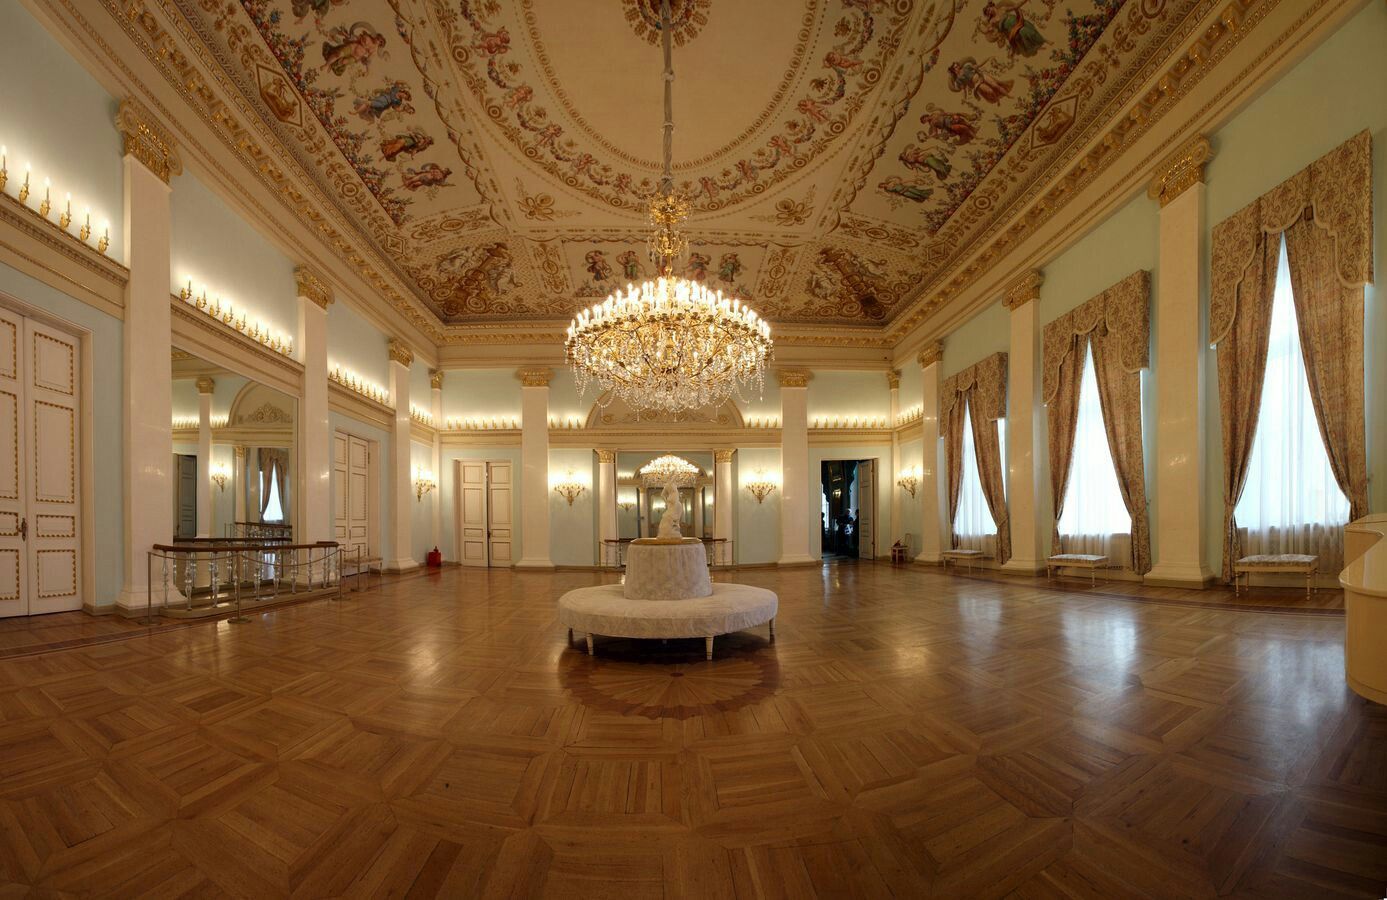 Танцевальный зал в Юсуповском дворце на Мойке в Санкт-Петербурге